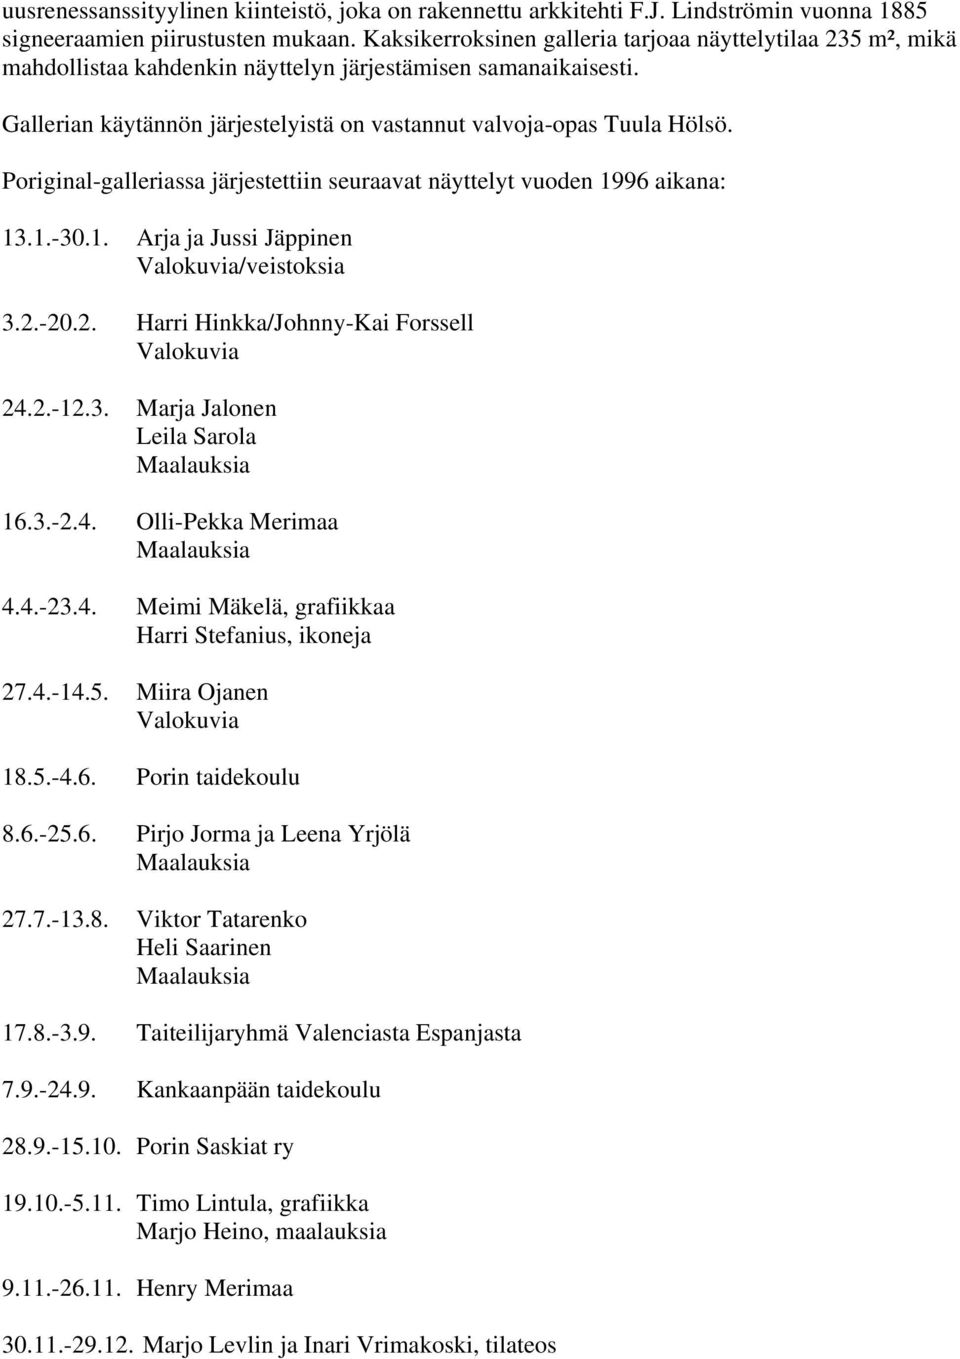 Poriginal-galleriassa järjestettiin seuraavat näyttelyt vuoden 1996 aikana: 13.1.-30.1. Arja ja Jussi Jäppinen Valokuvia/veistoksia 3.2.-20.2. Harri Hinkka/Johnny-Kai Forssell Valokuvia 24.2.-12.3. Marja Jalonen Leila Sarola Maalauksia 16.